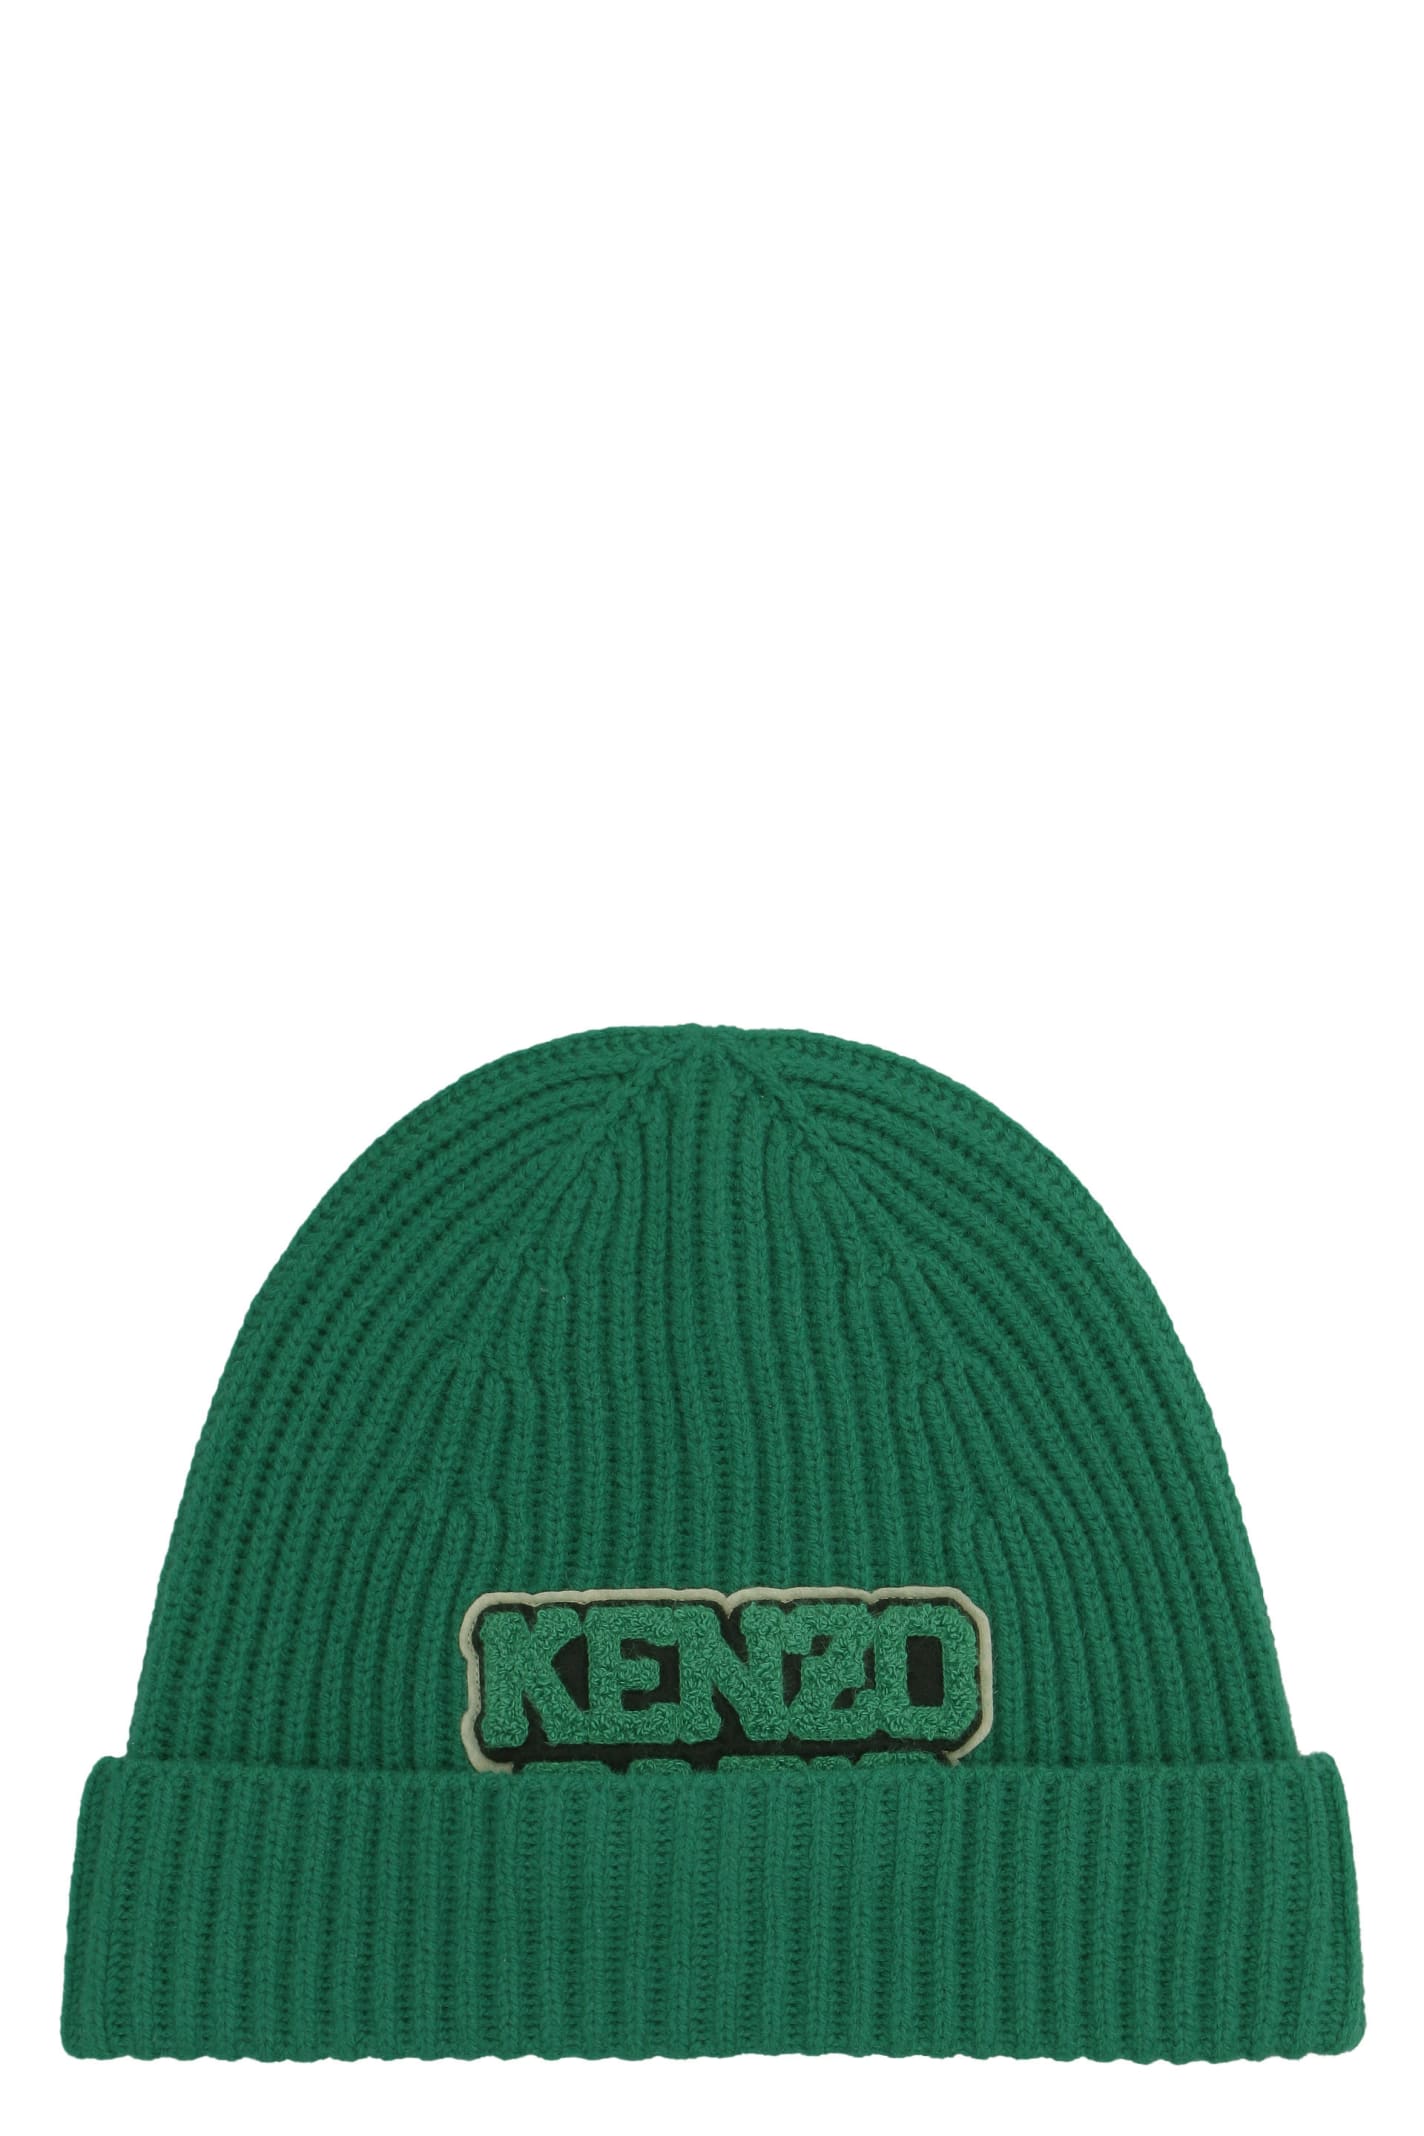 Kenzo Wool Hat